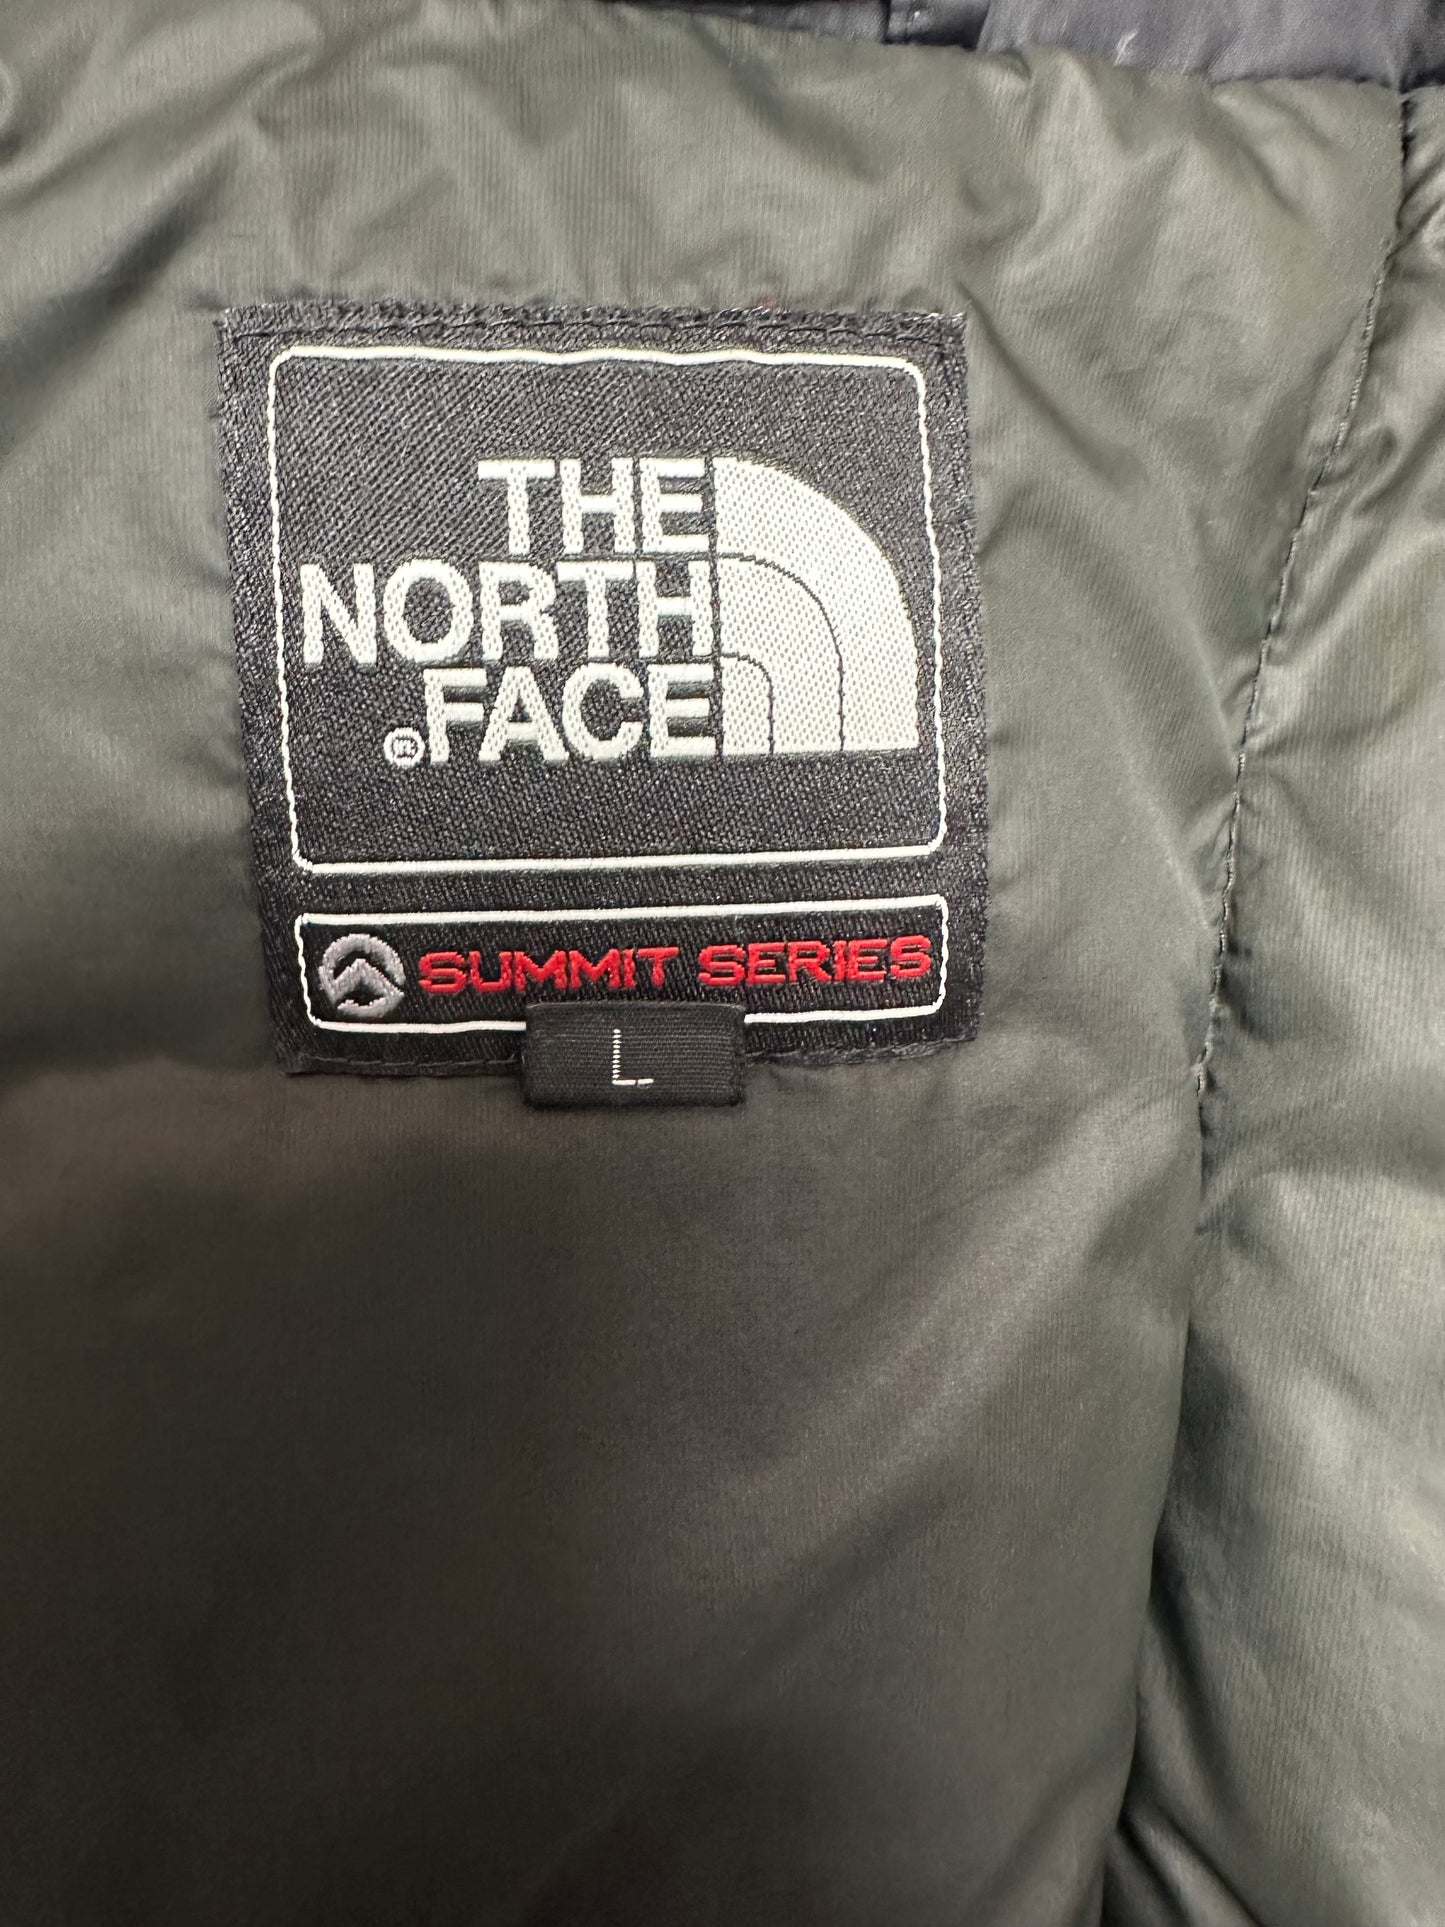 10019【THE NORTH FACE】ザノースフェイス メンズ サミットシリーズ ダウンジャケット 800フィル ブラック L